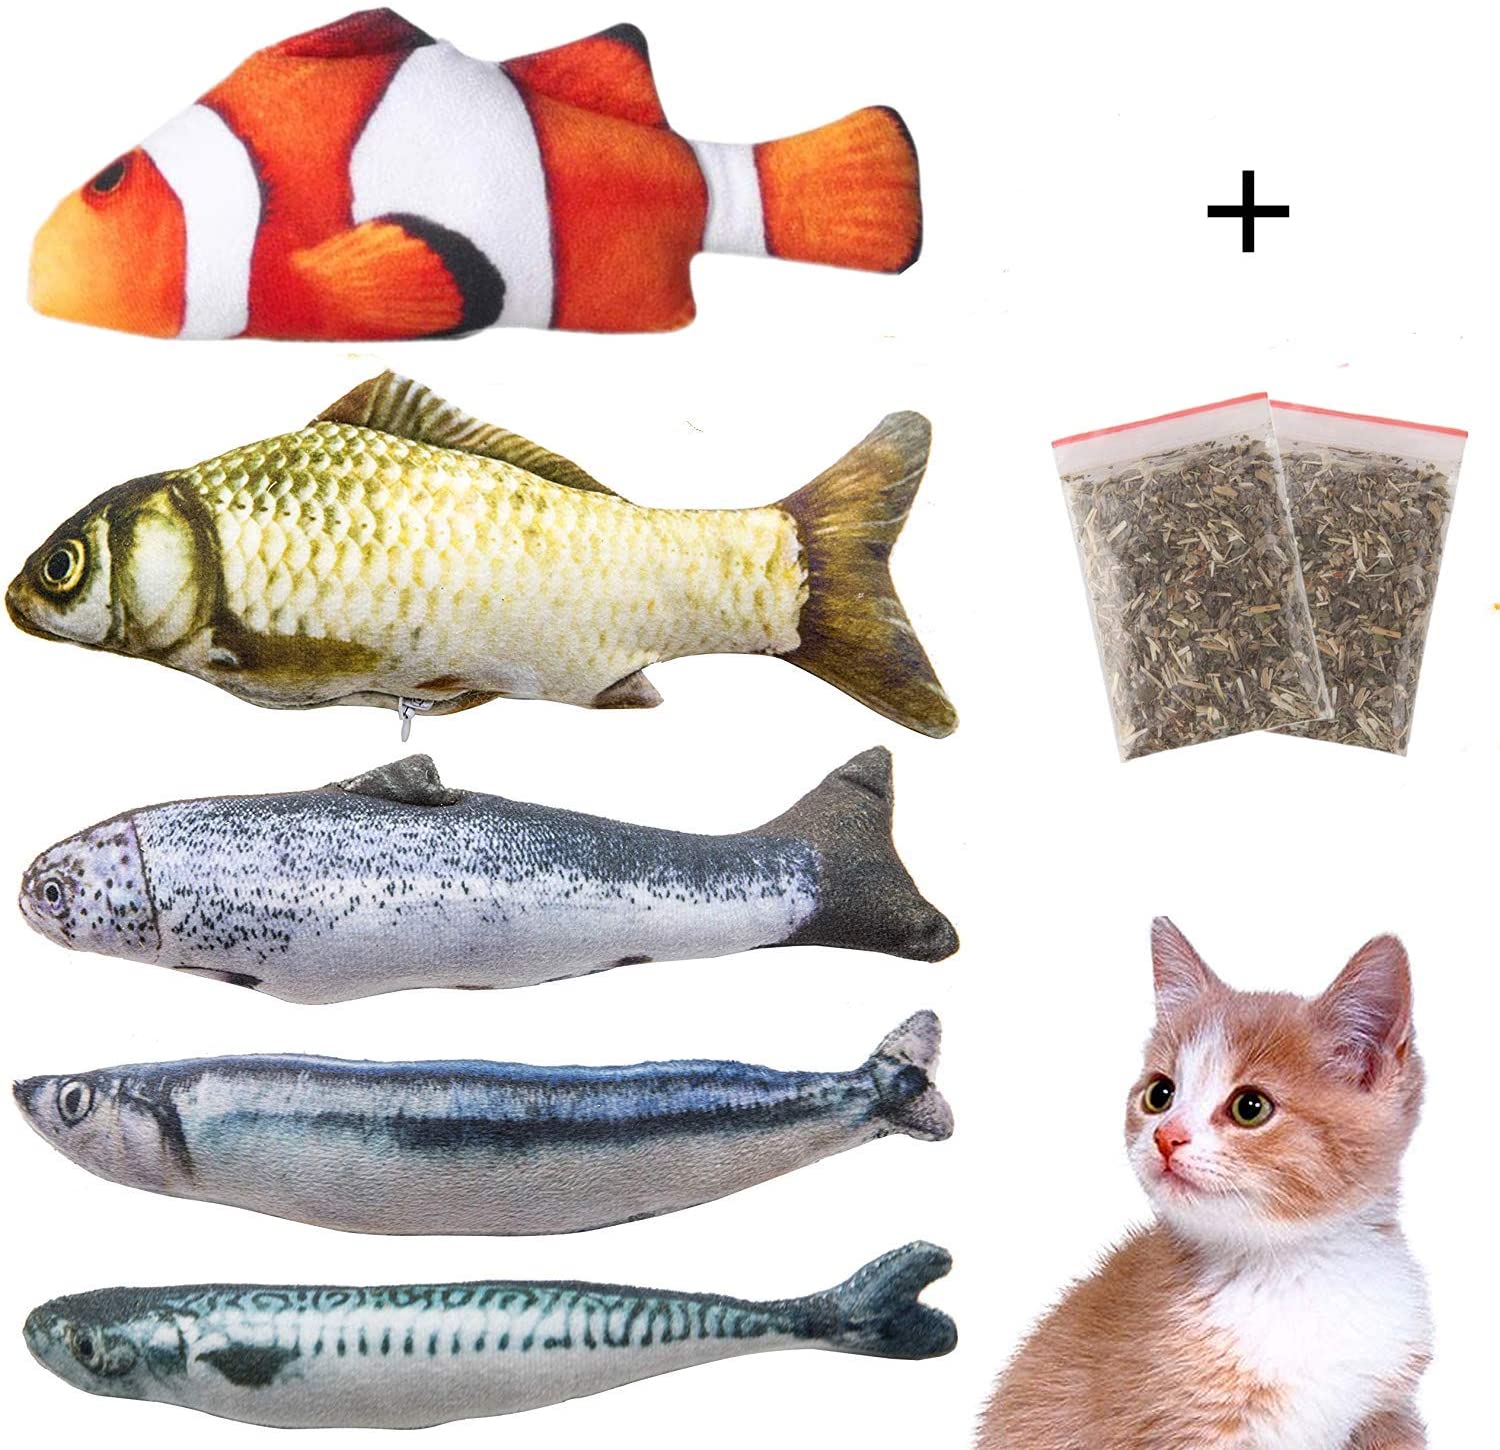  Felly Juguetes del Catnip,Juguetes Interactivo para Gatos con Hierba gatera, Almohada de Gato Catnip Fish Toy Chew del Gato Juguete Mascotas para Gatos, Perro 